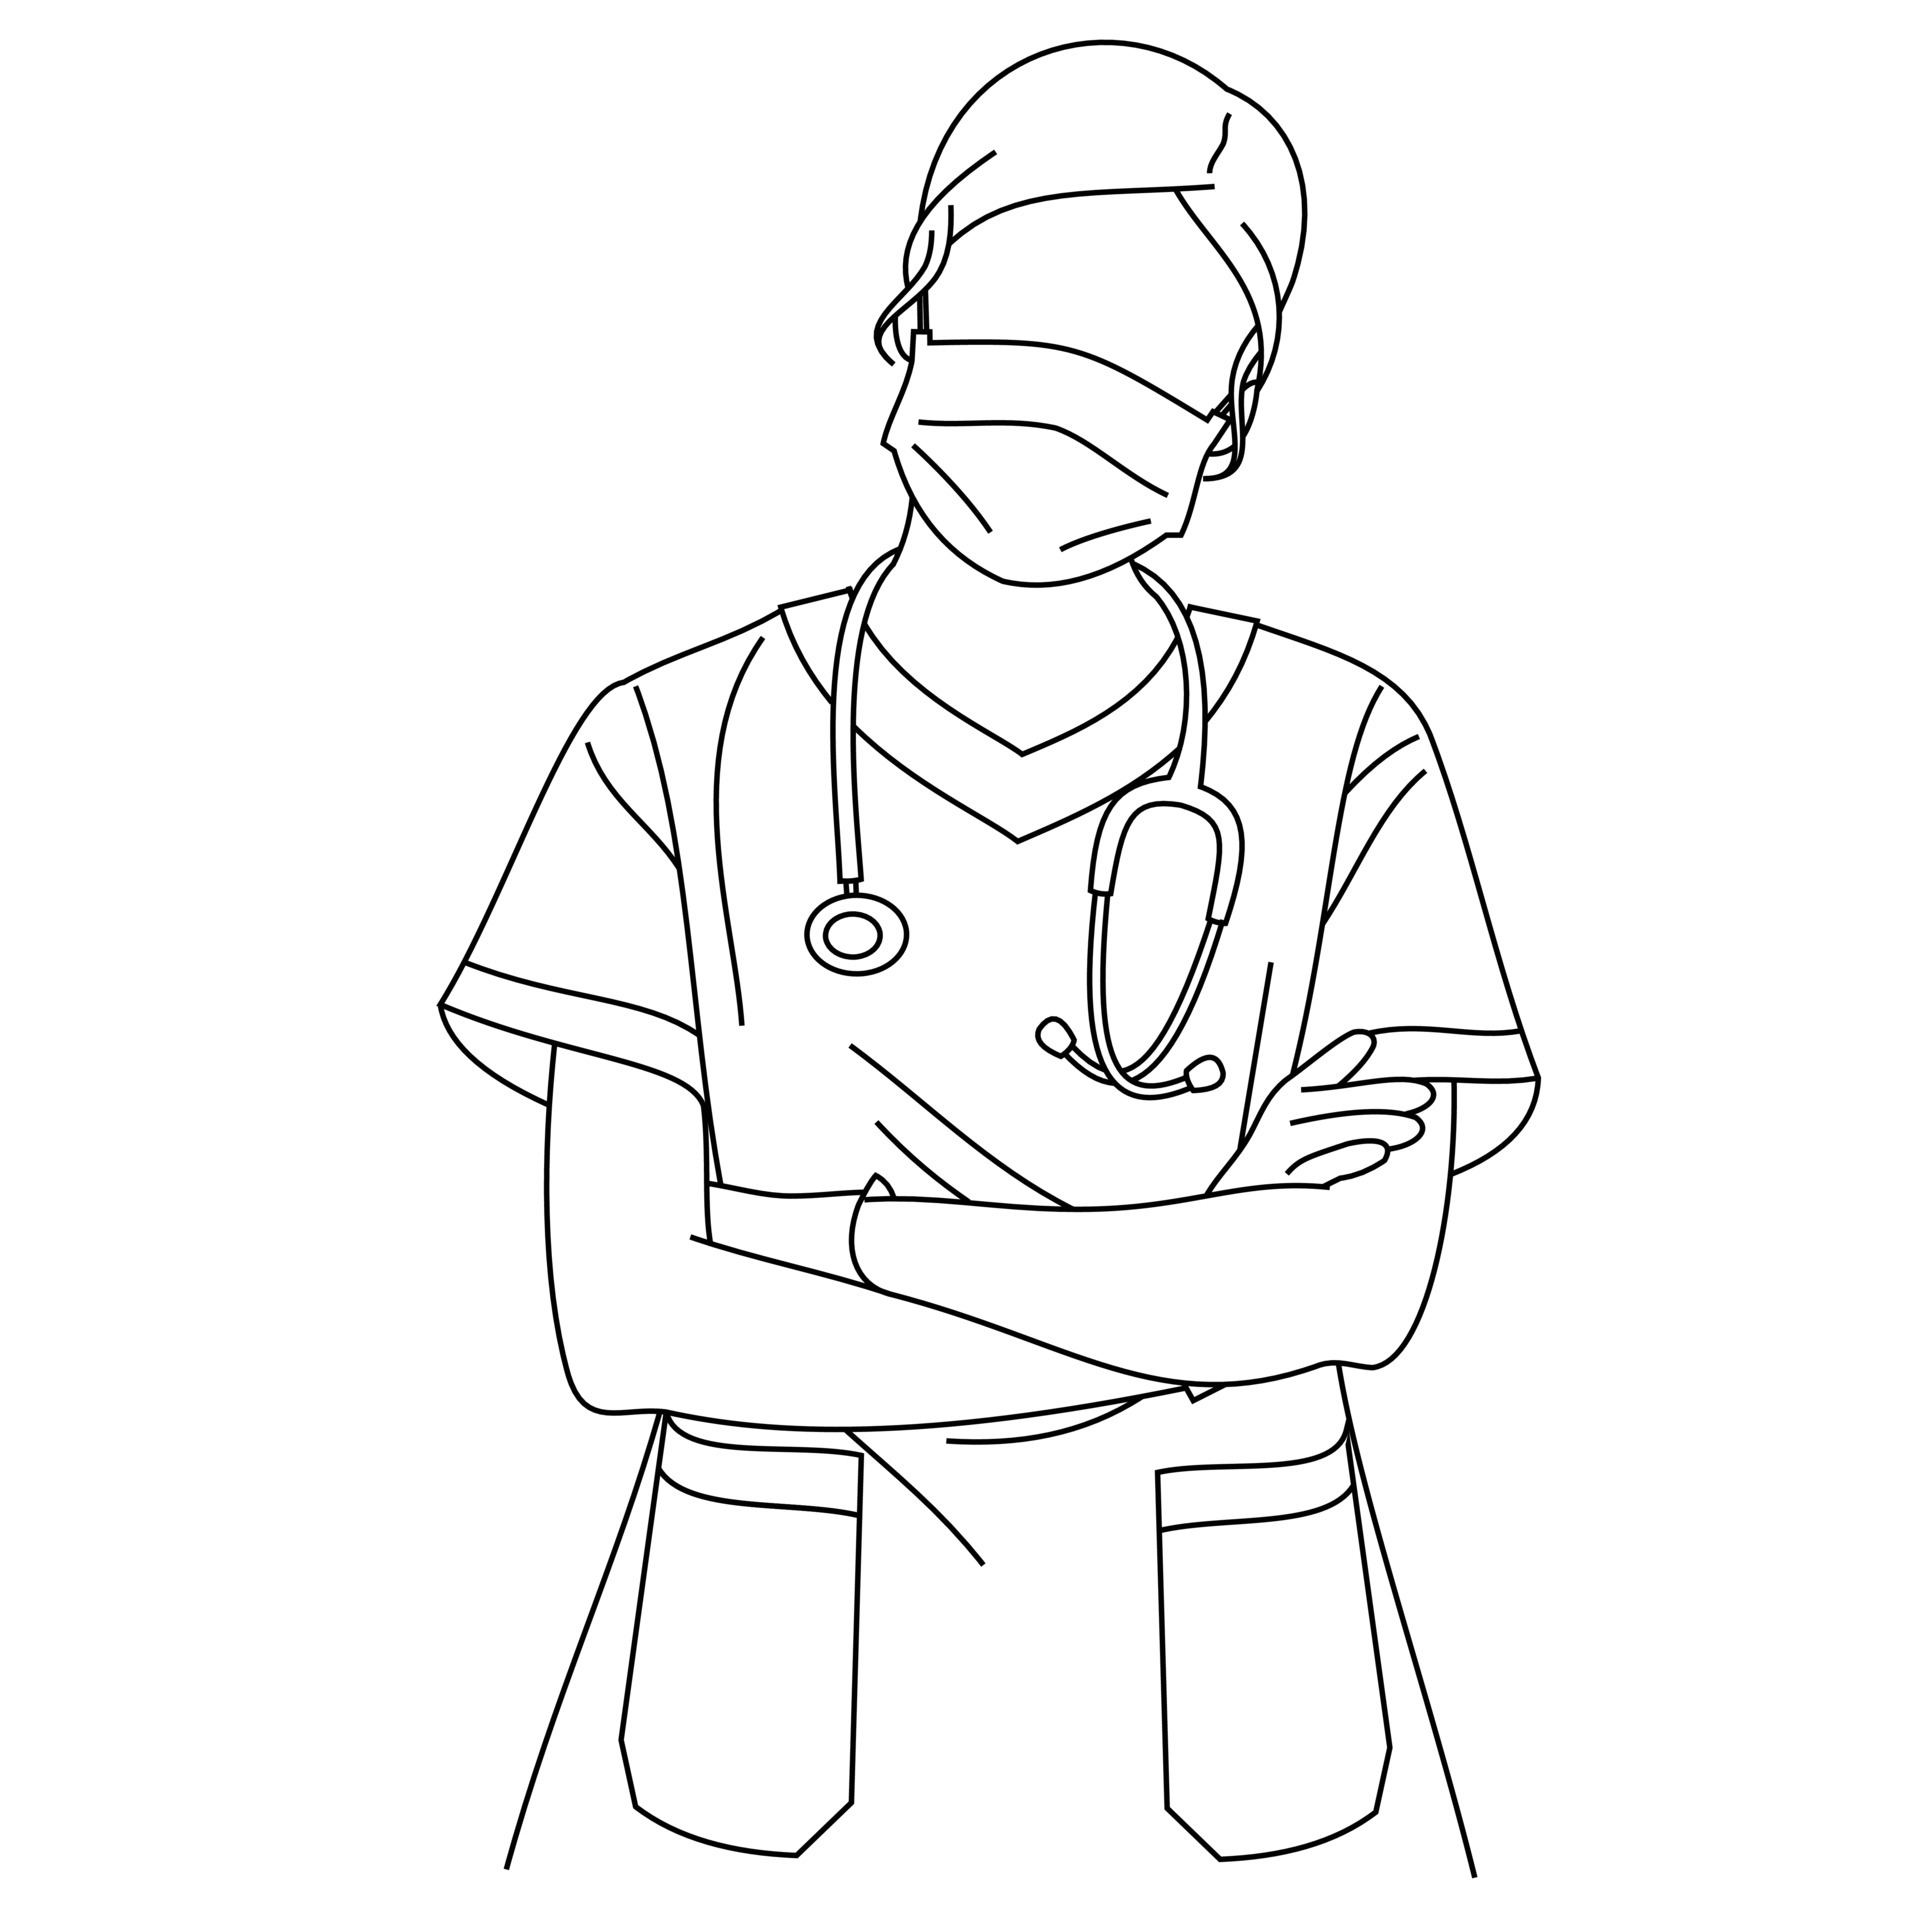 Premium Vector  Hand drawn sketch icon nurse